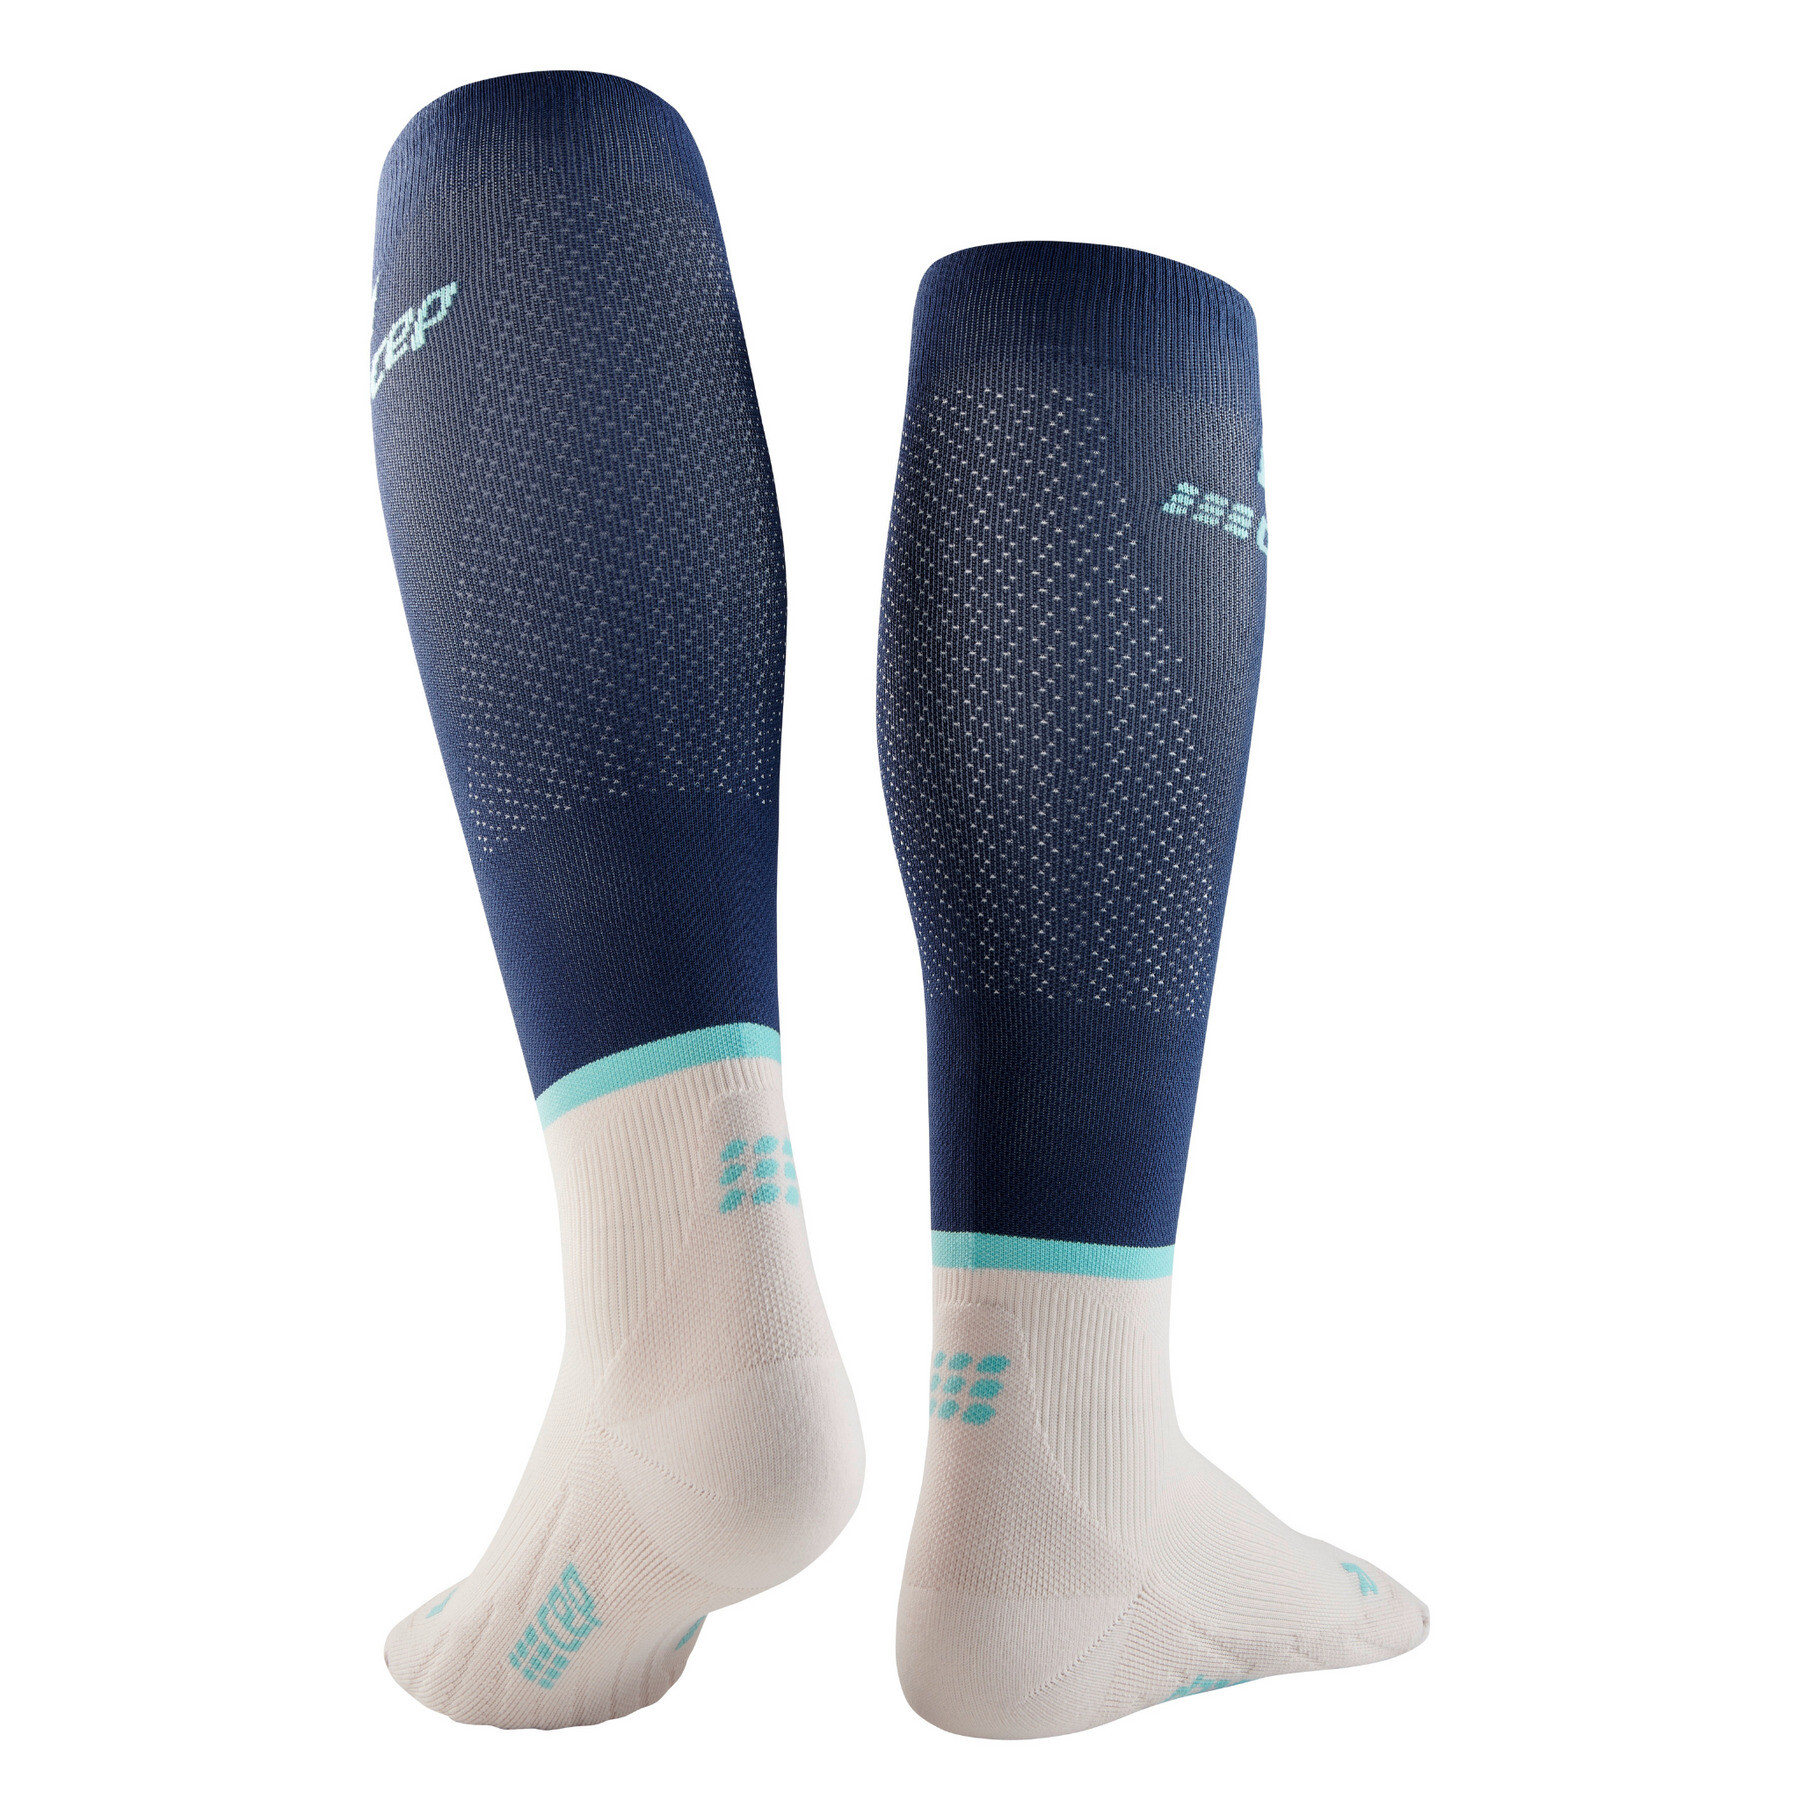 Los calcetines de compresión run socks, altos v4 CEP Compression